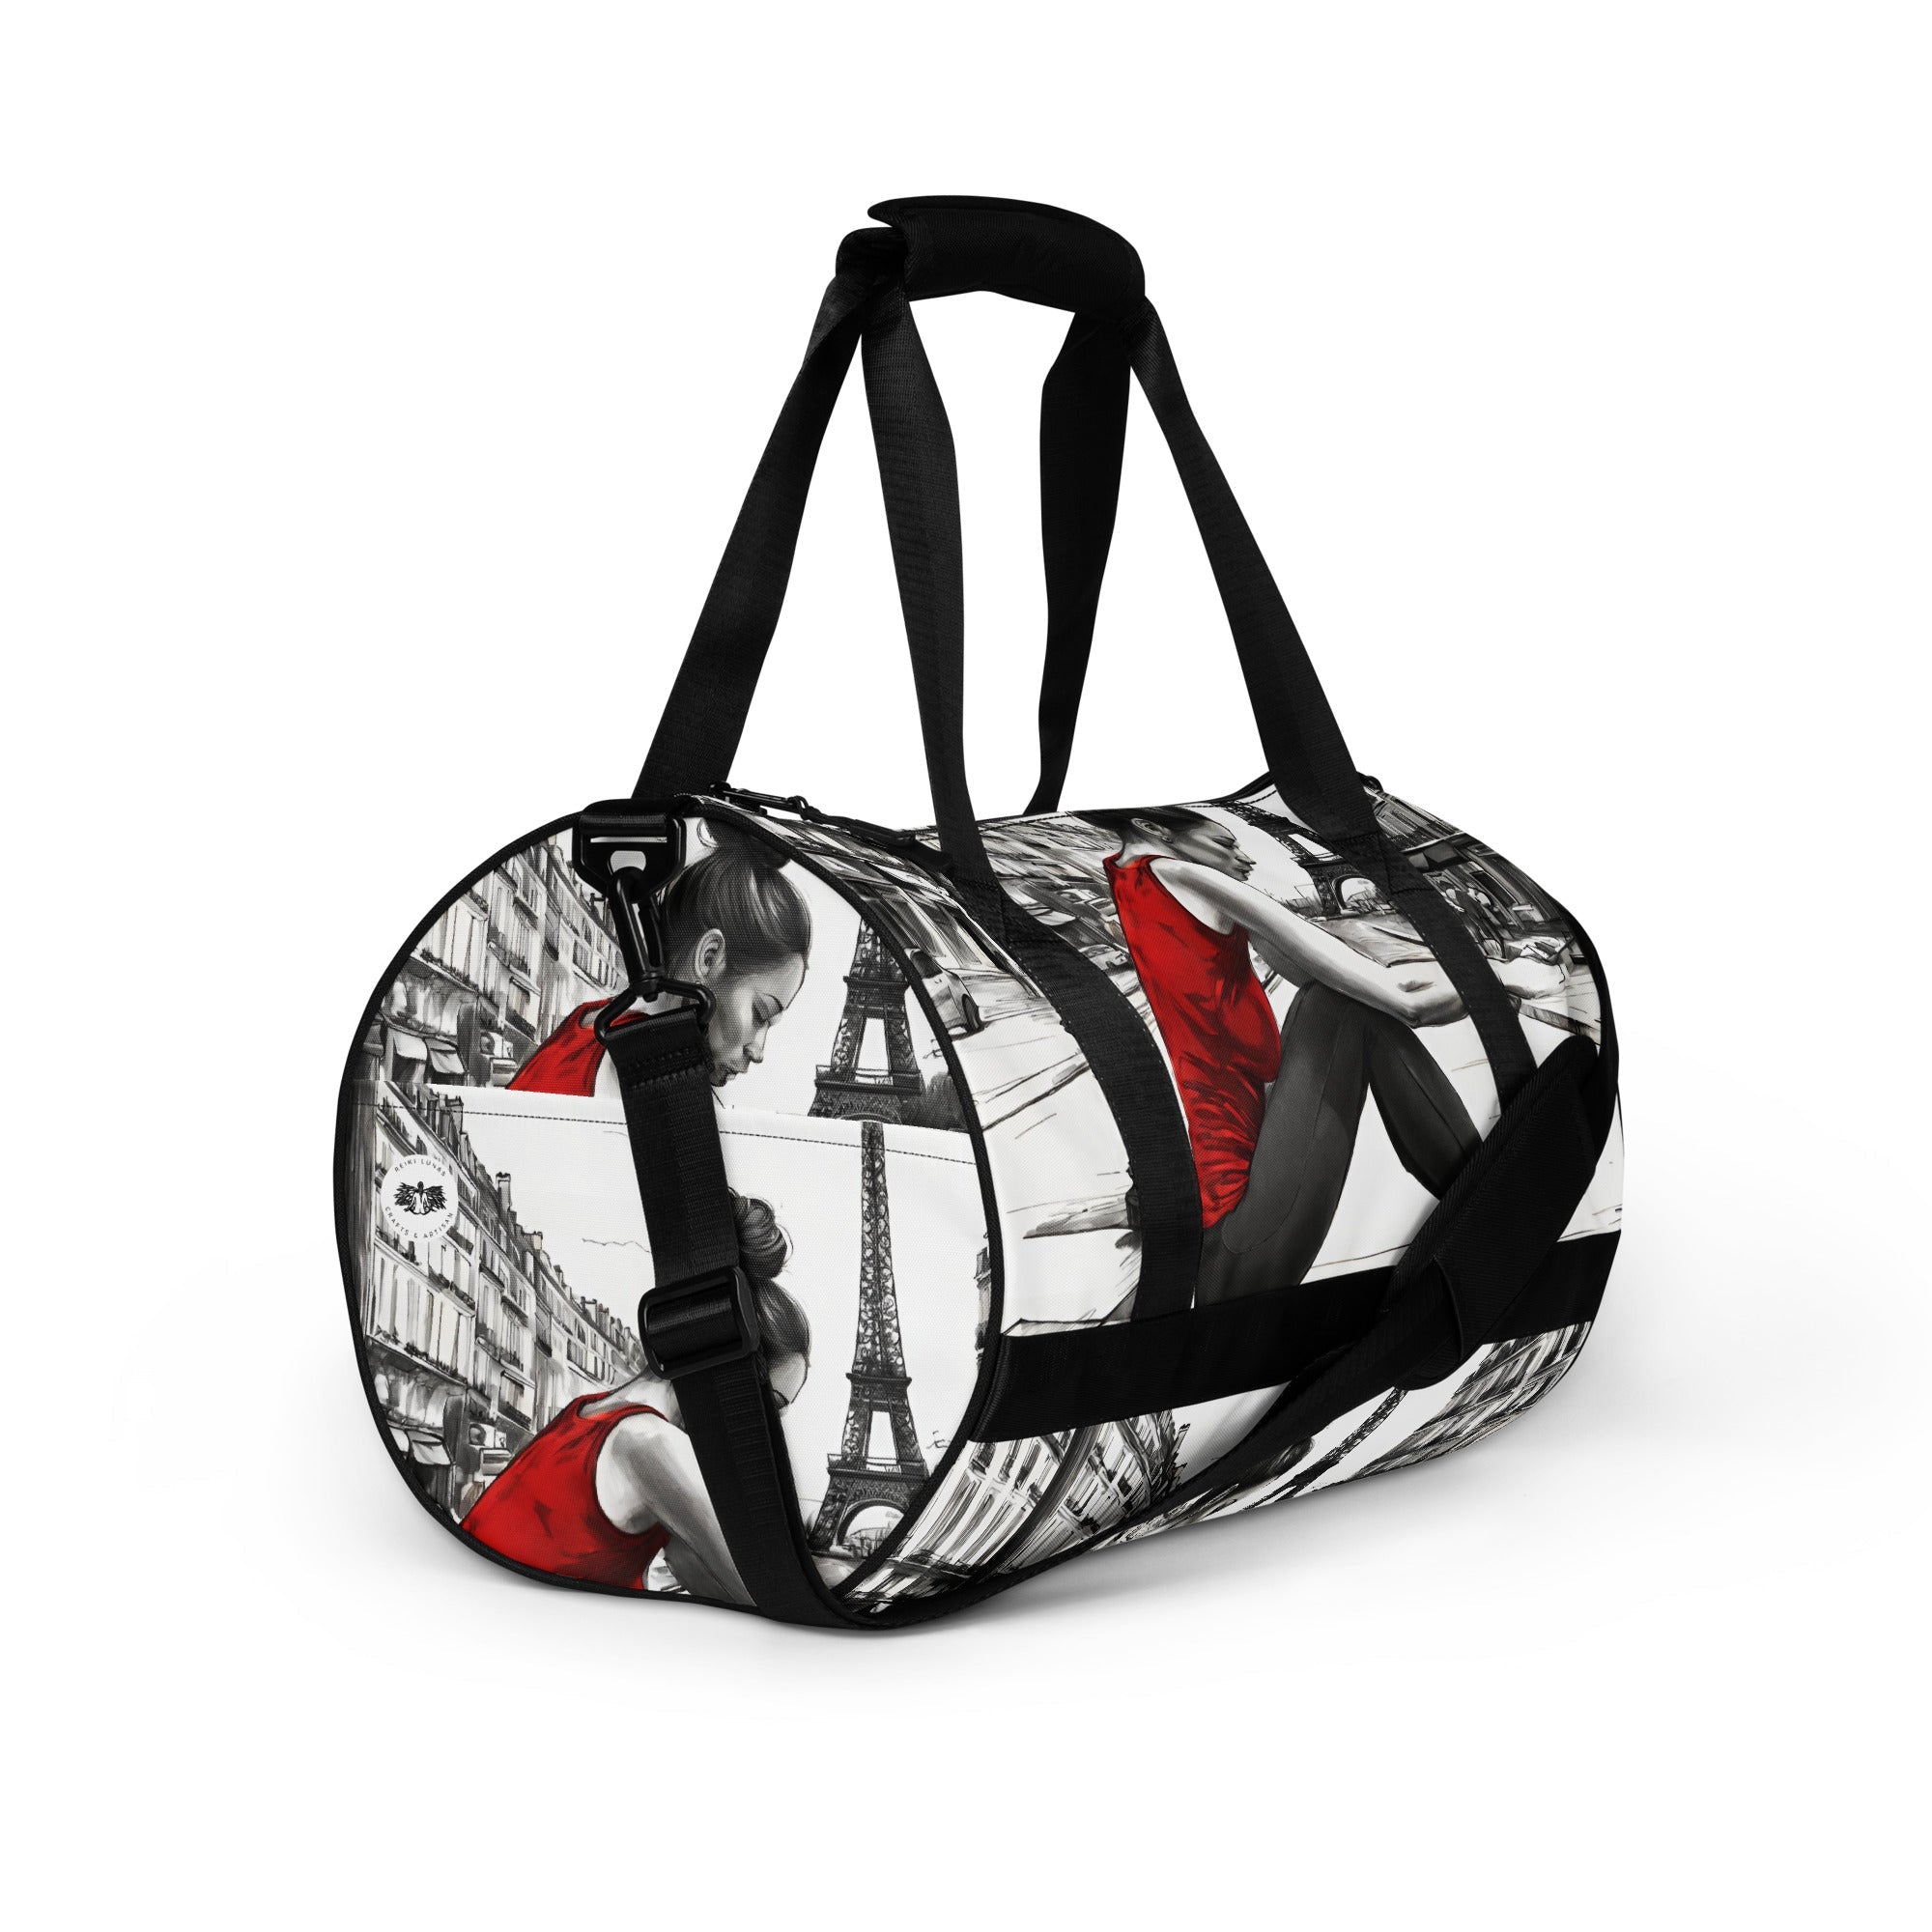 CHI All-over print gym bag - REIKI LUNAS, CRAFTS & ARTISAN